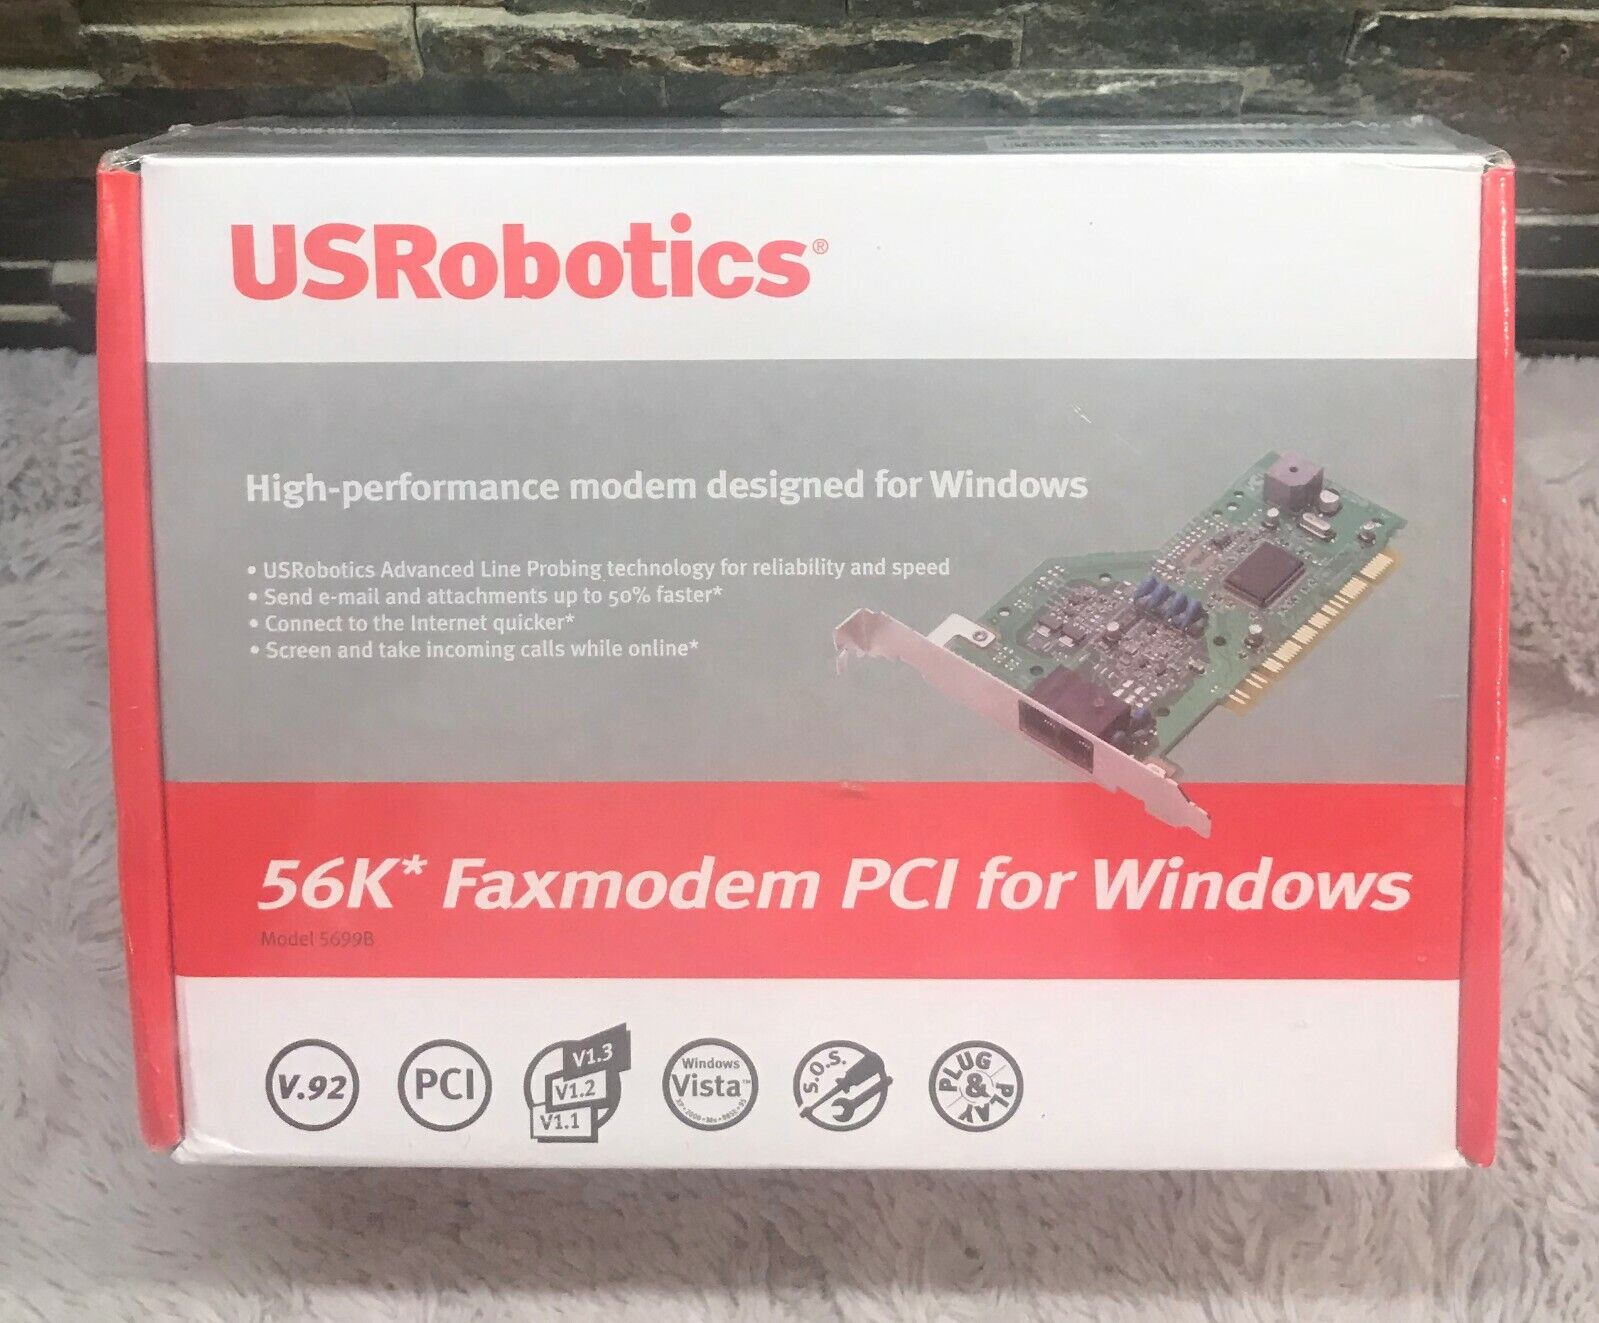 56k Faxmodem PCI for Windows USR New Unopened Old Stock USR5699B US Robotics